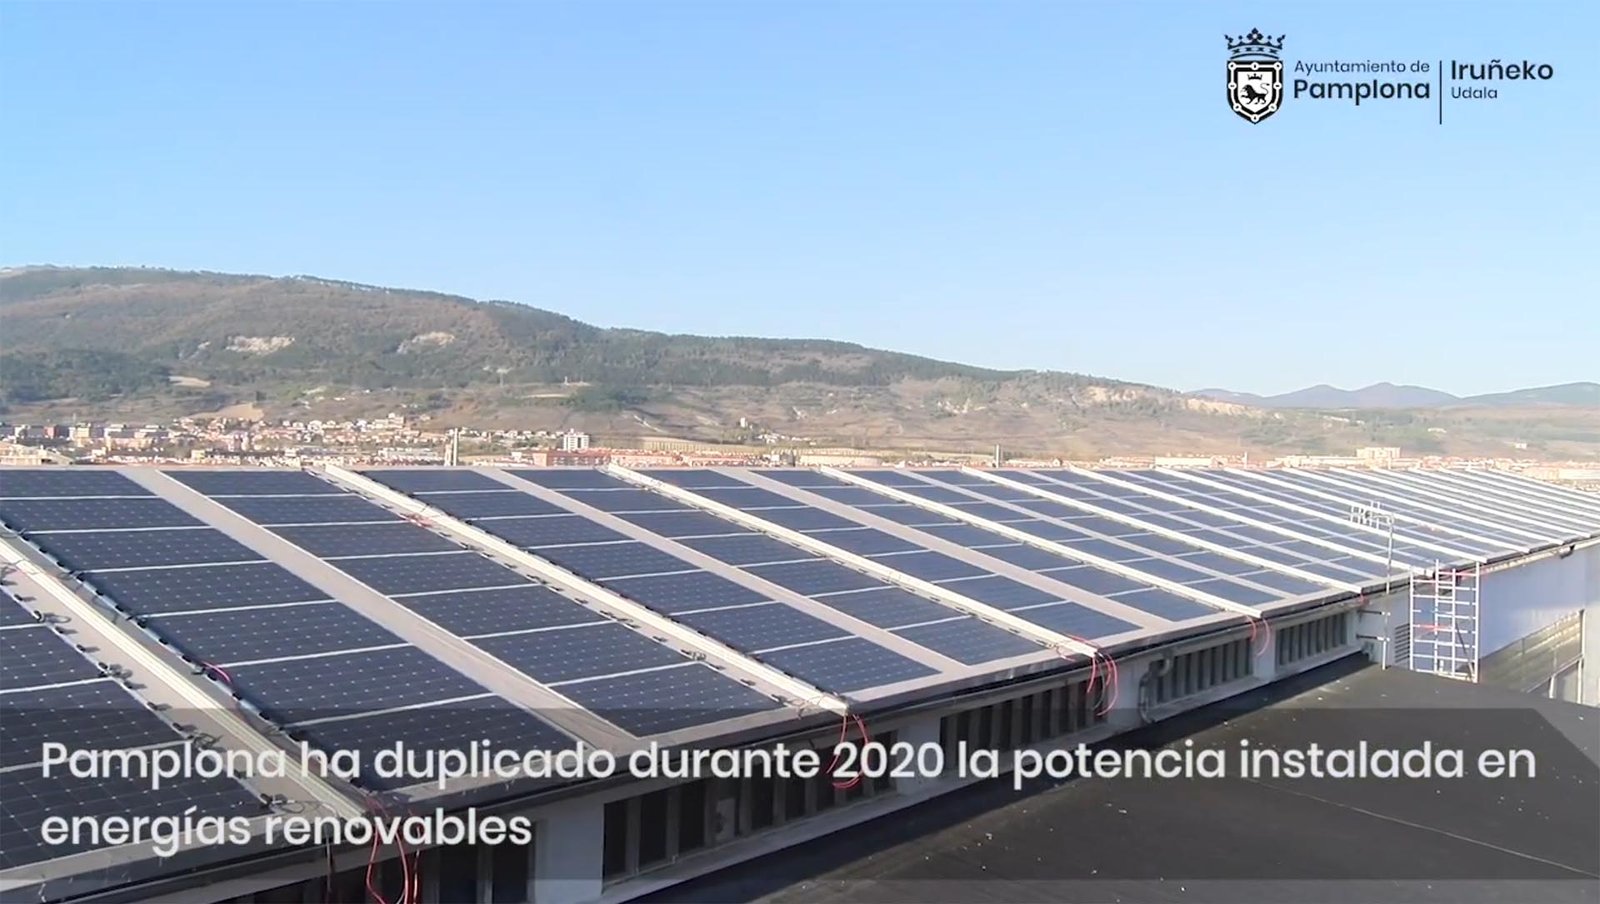 Pamplona ha duplicado en 2020 la potencia instalada en energías renovables, gracias a la apuesta de particulares, empresas y sector público